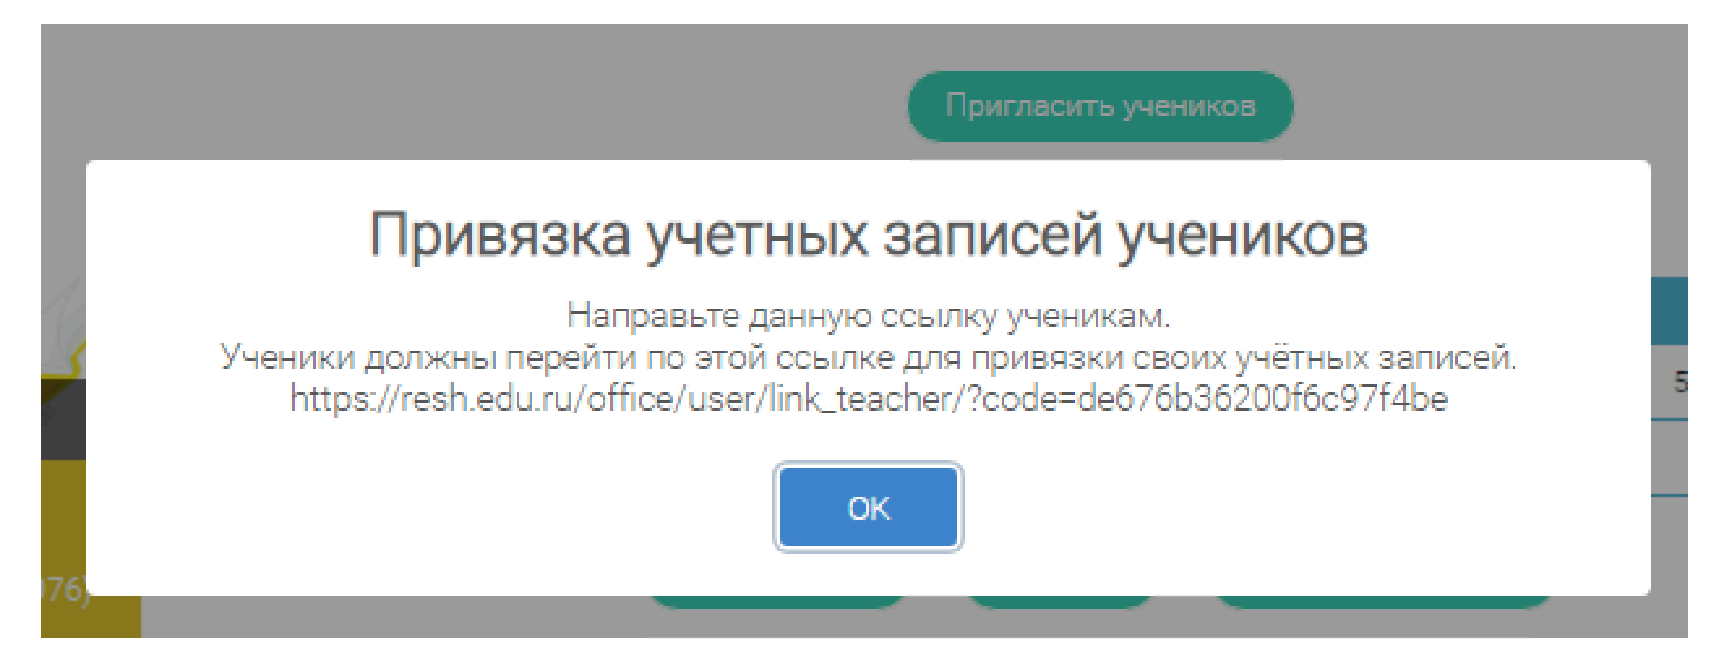 Российская электронная школа решить